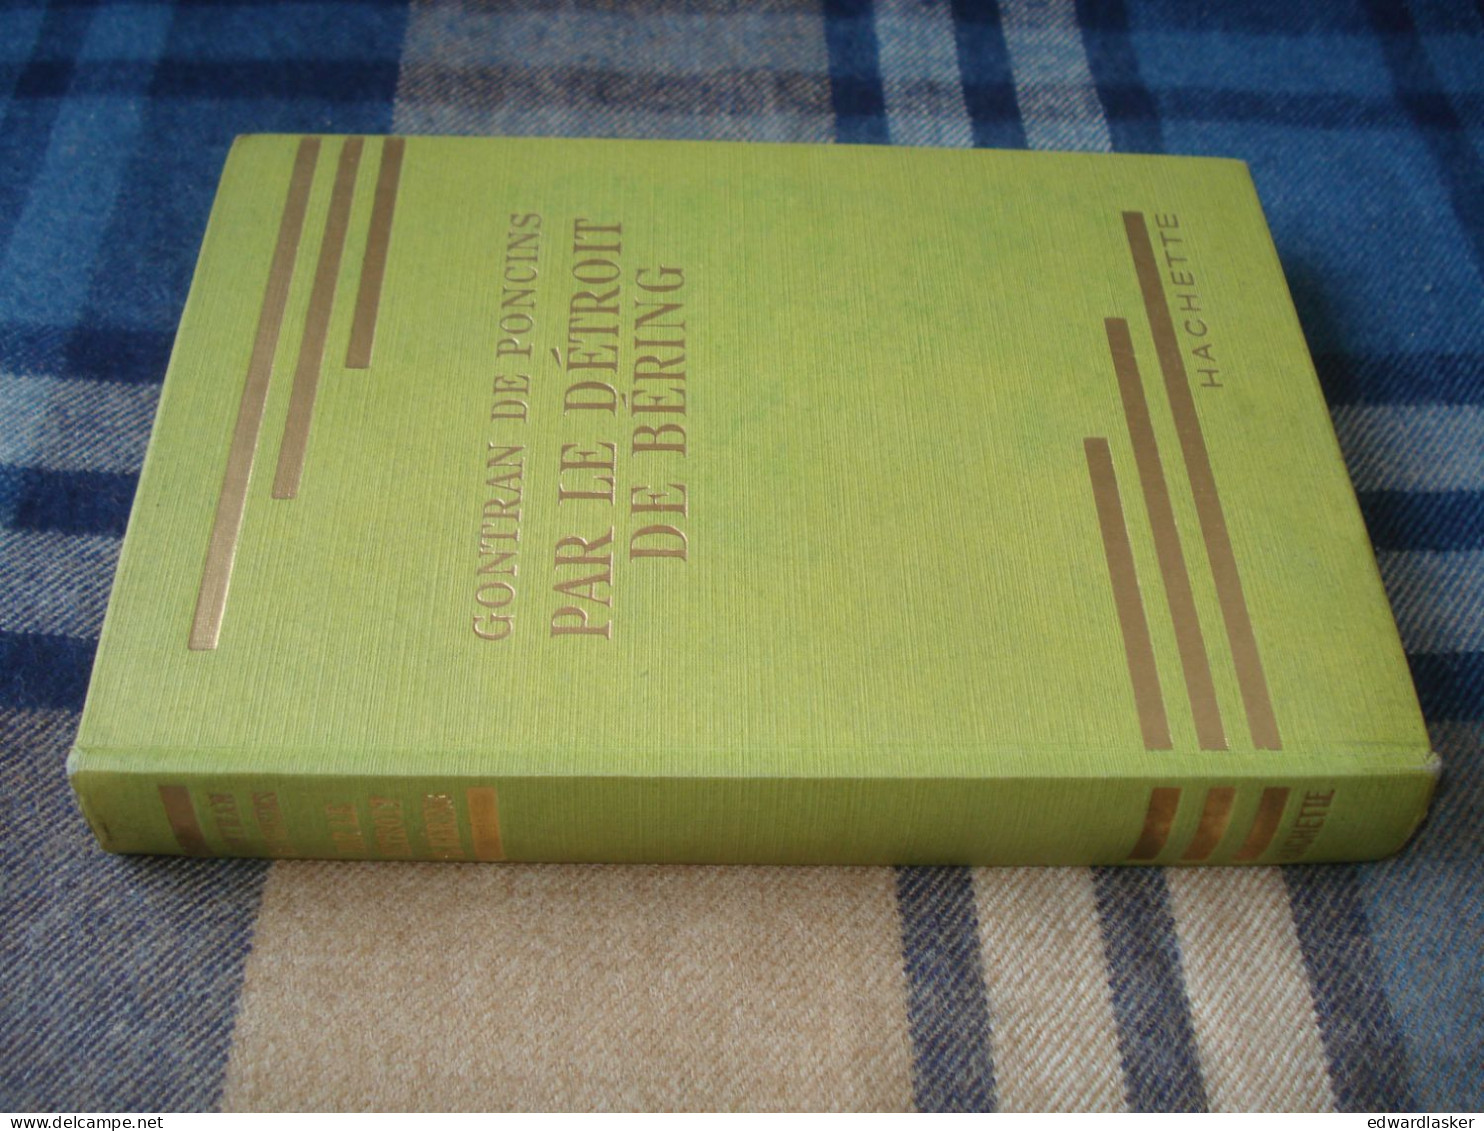 BIBLIOTHEQUE VERTE : Par le Détroit de Béring /Gontran de Poncins - jaquette 1954 - Paul Durand